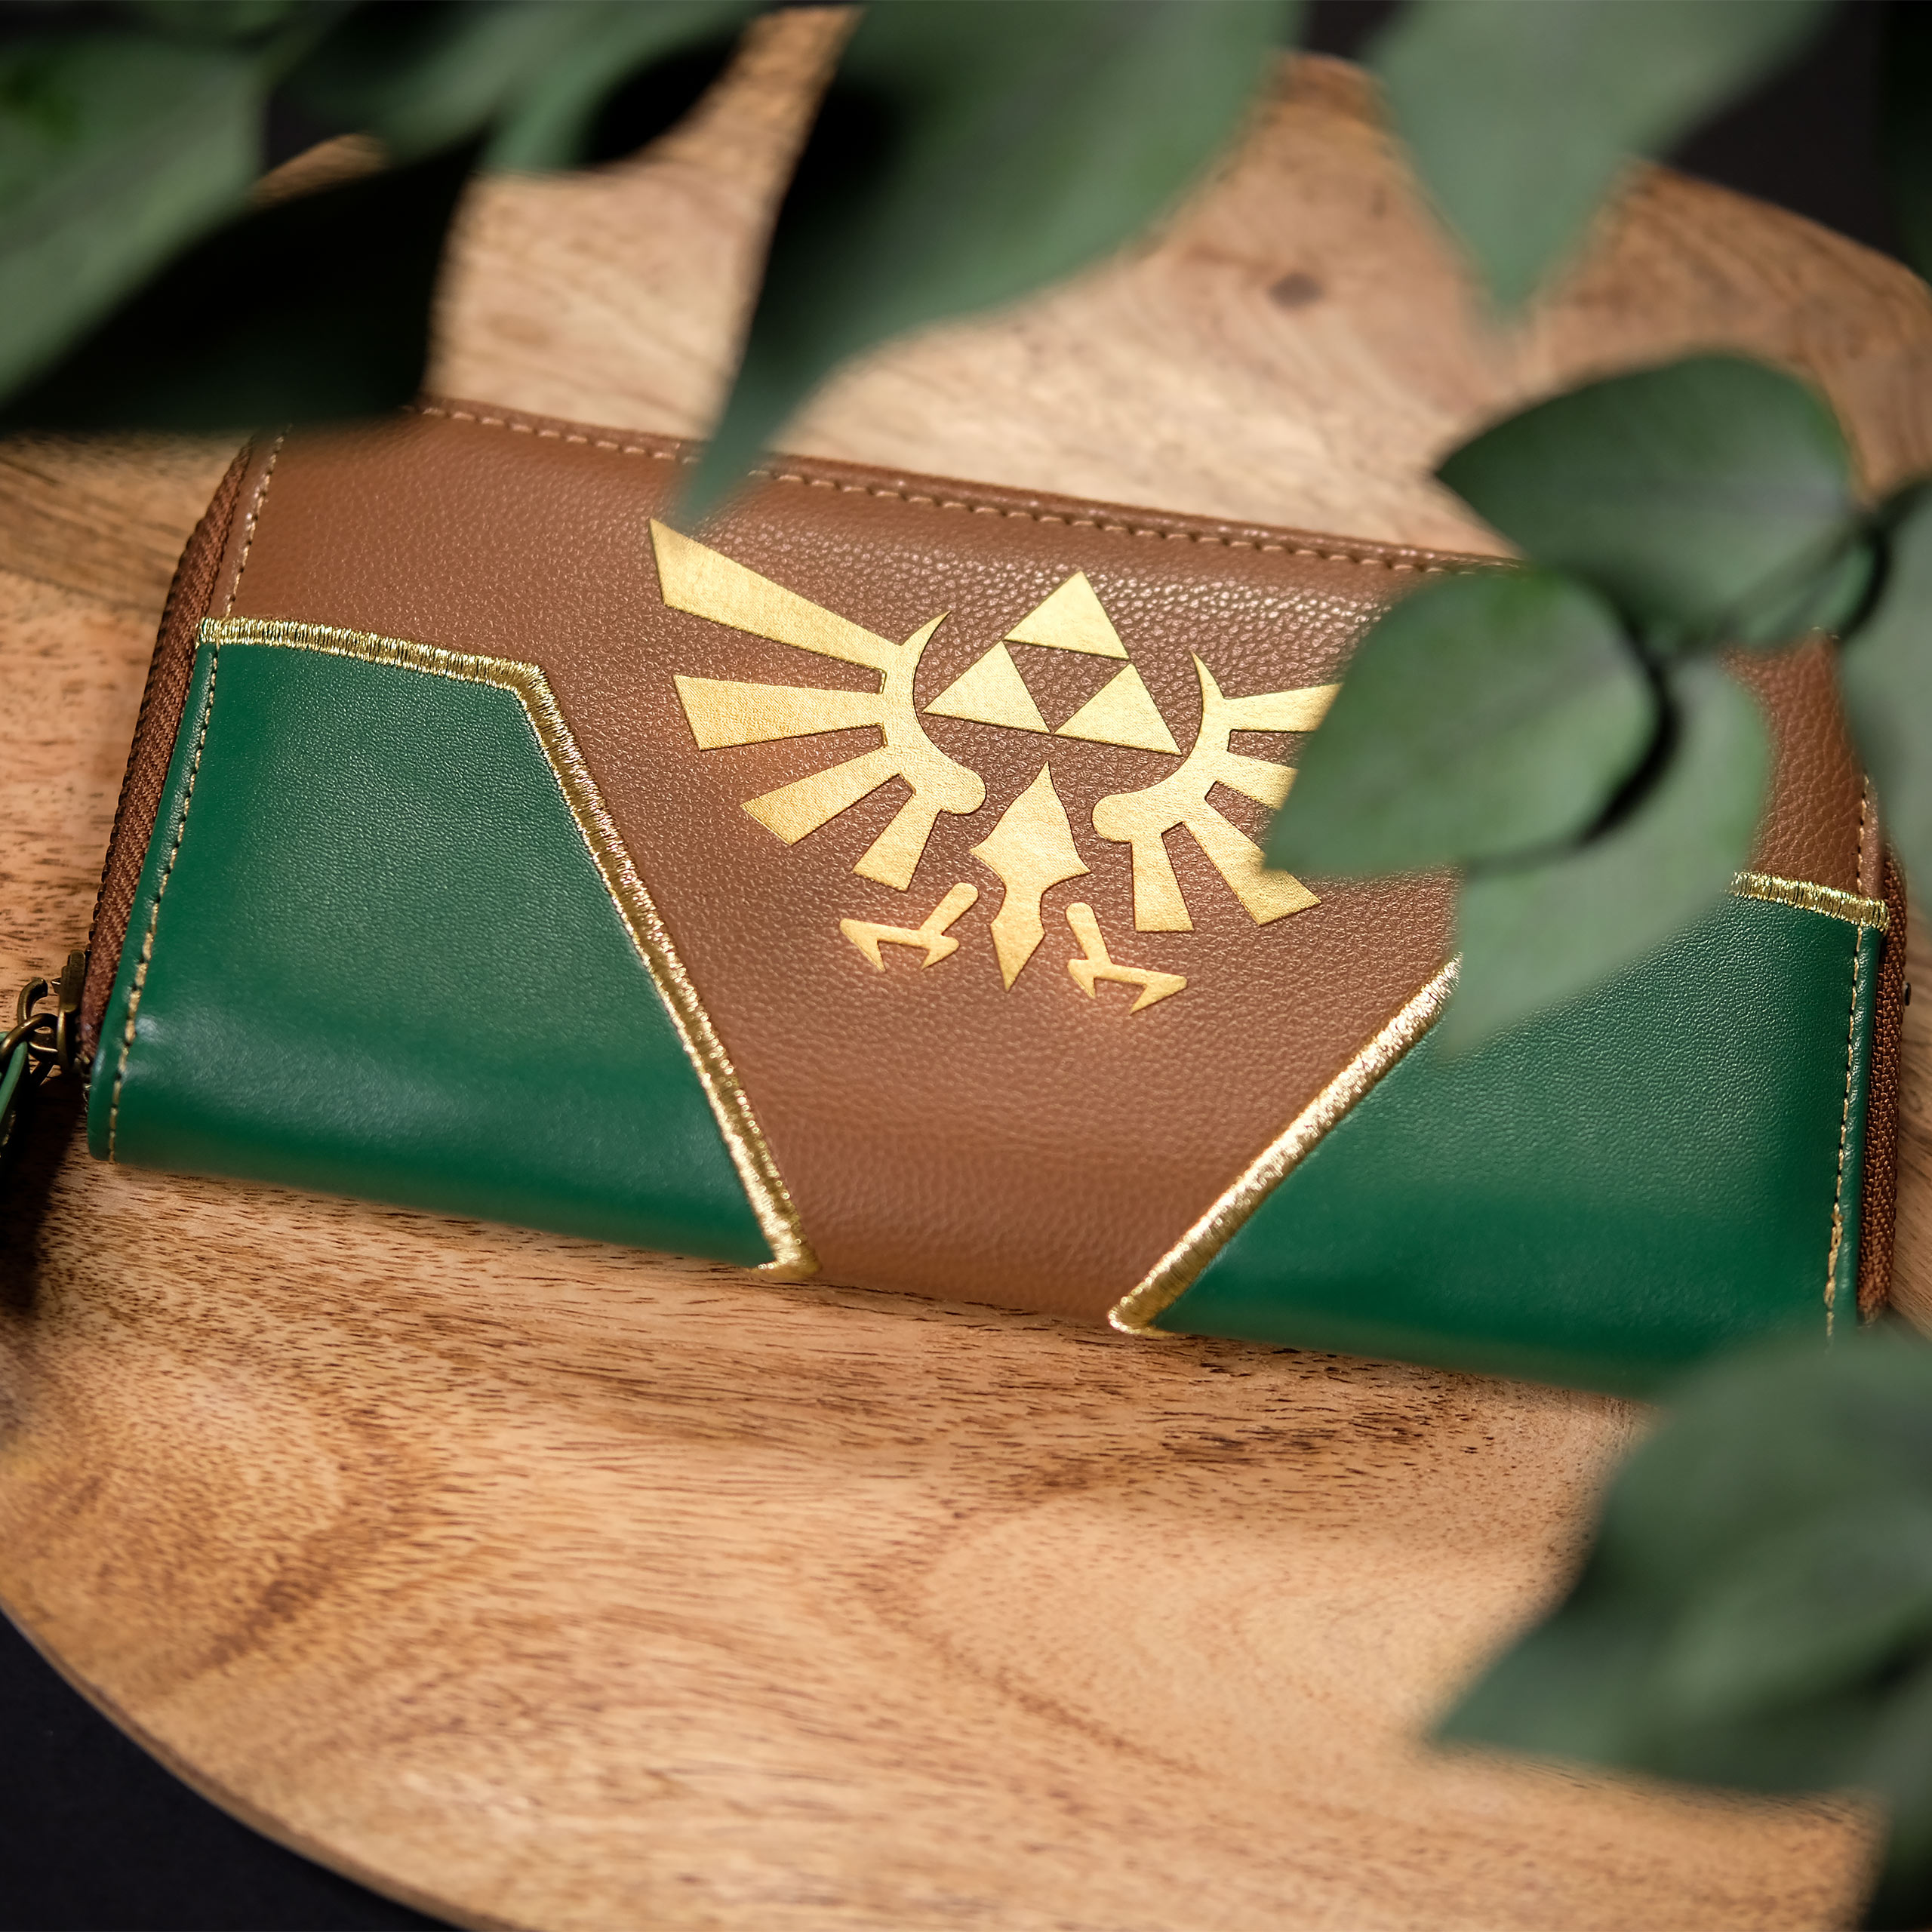 Zelda - Hyrule Logo Geldbörse grün-braun